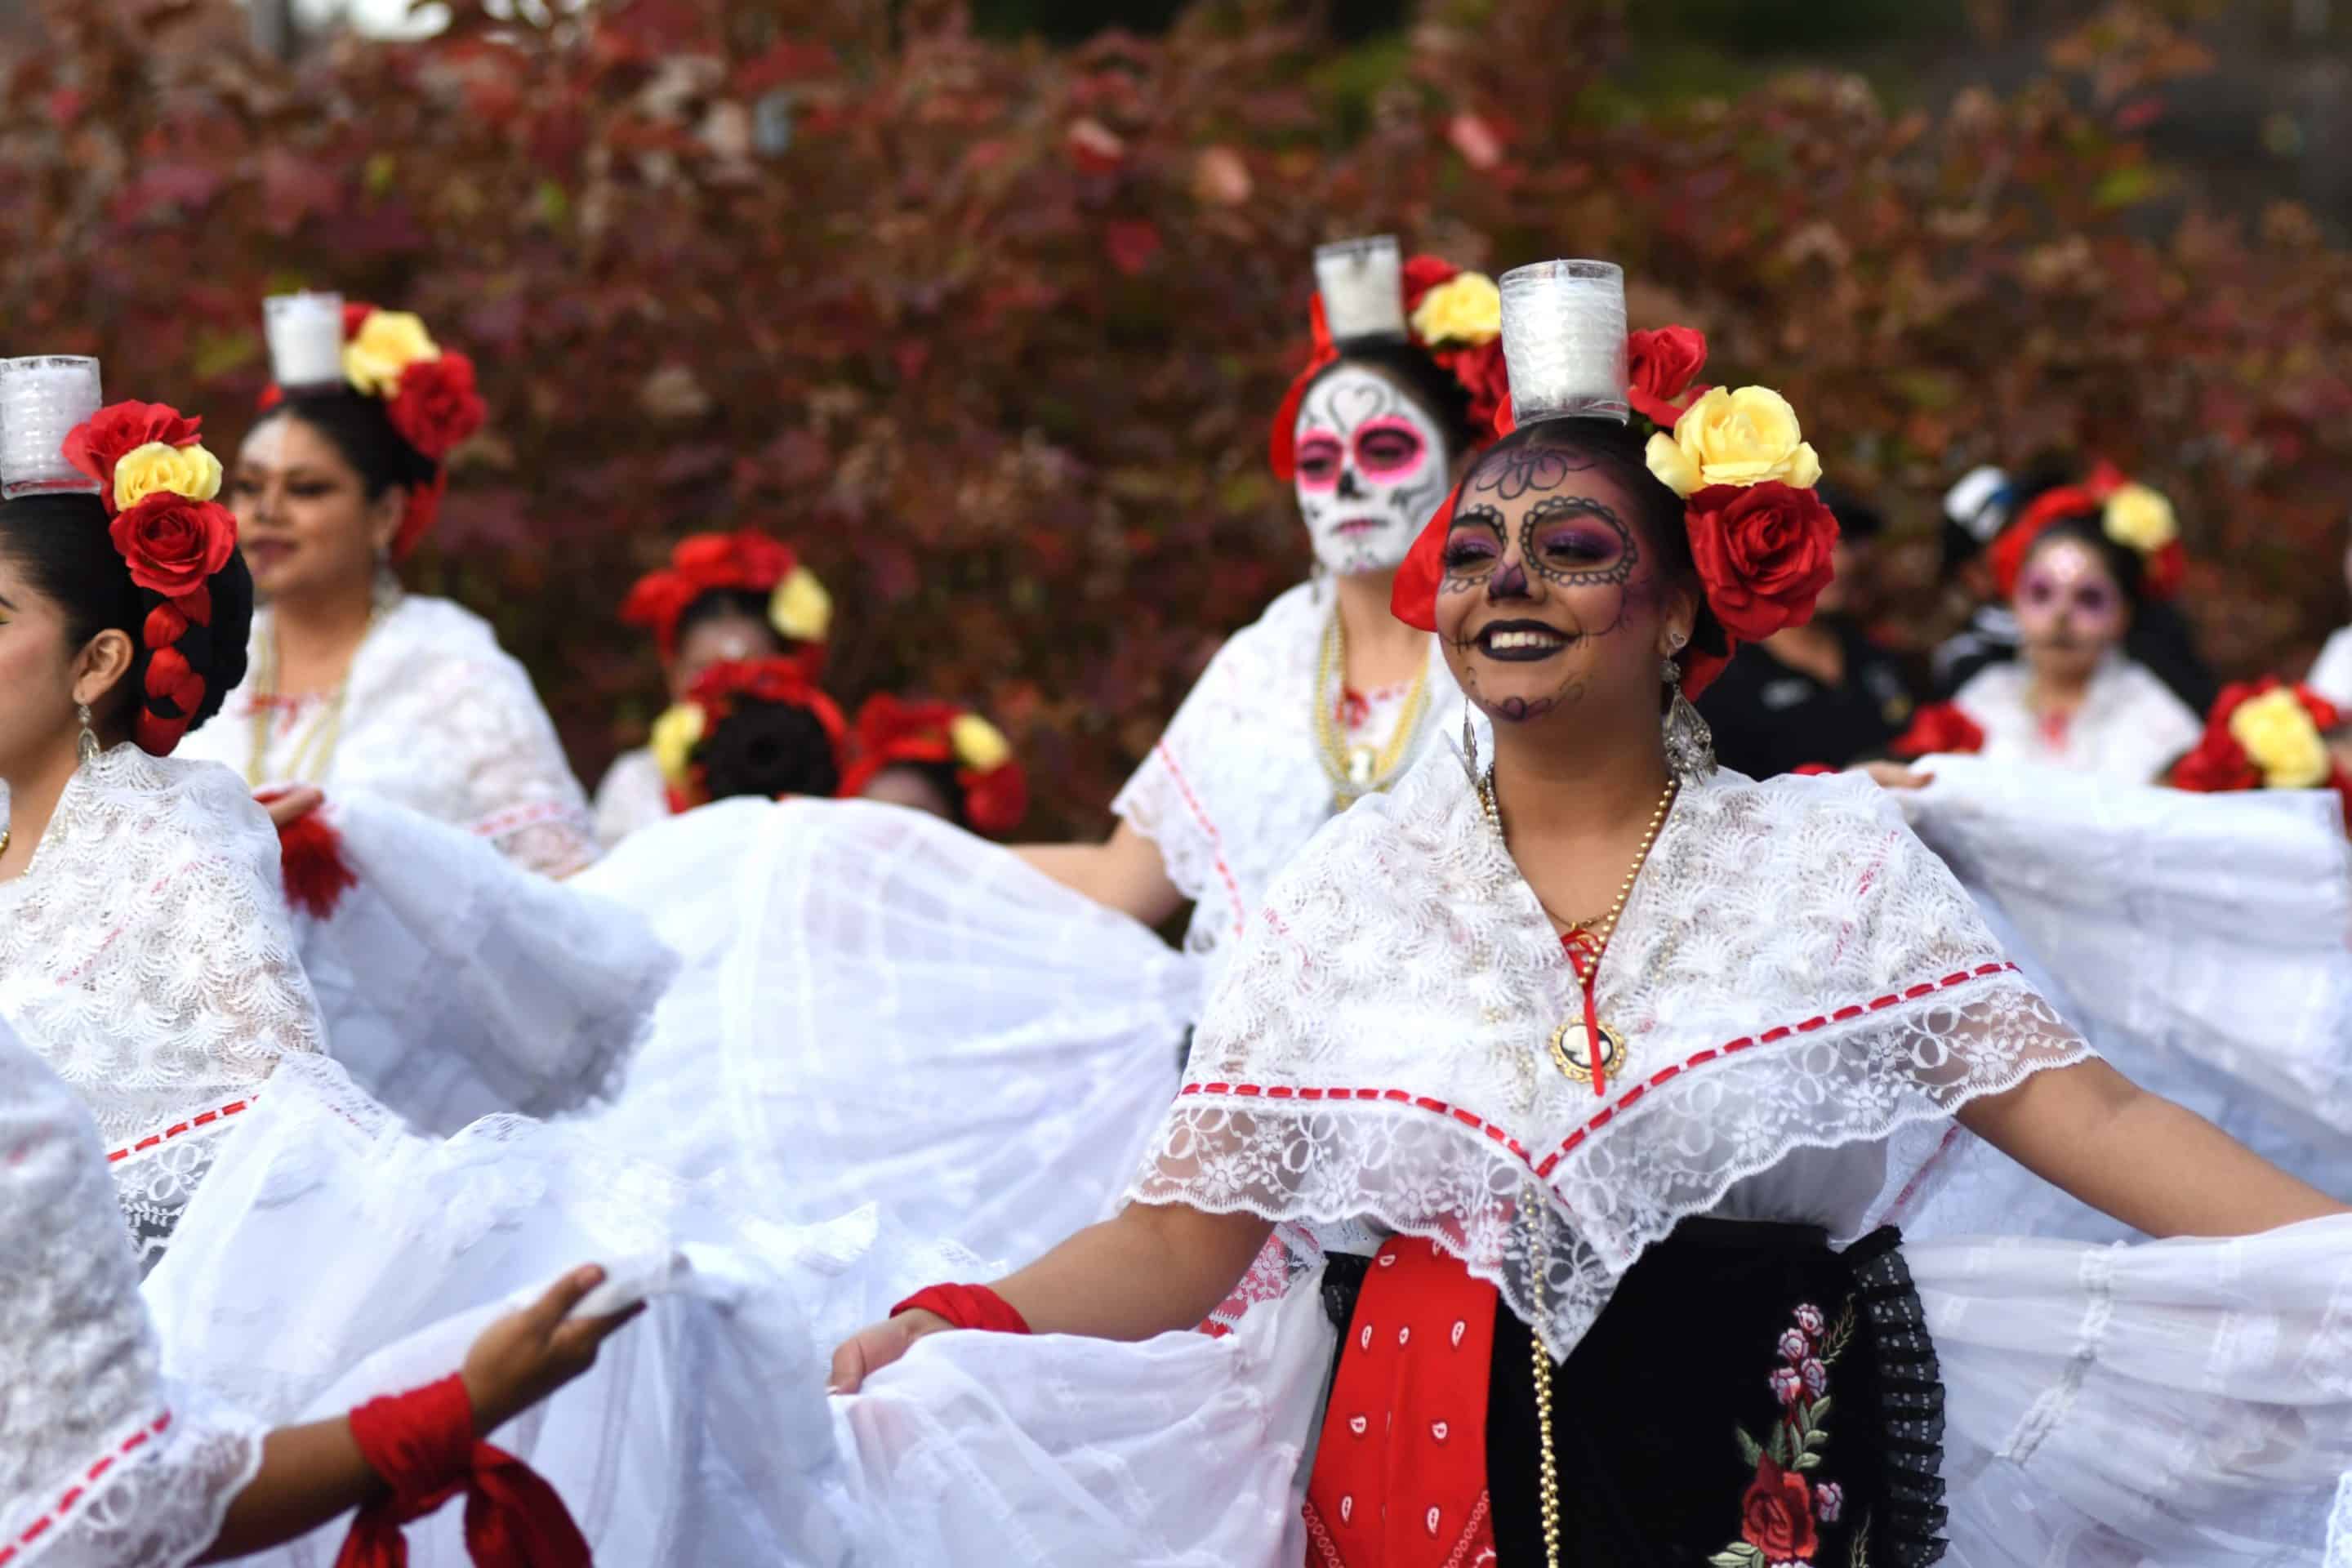 Dancers with Catrina makeup at a Día de los Muertos celebration